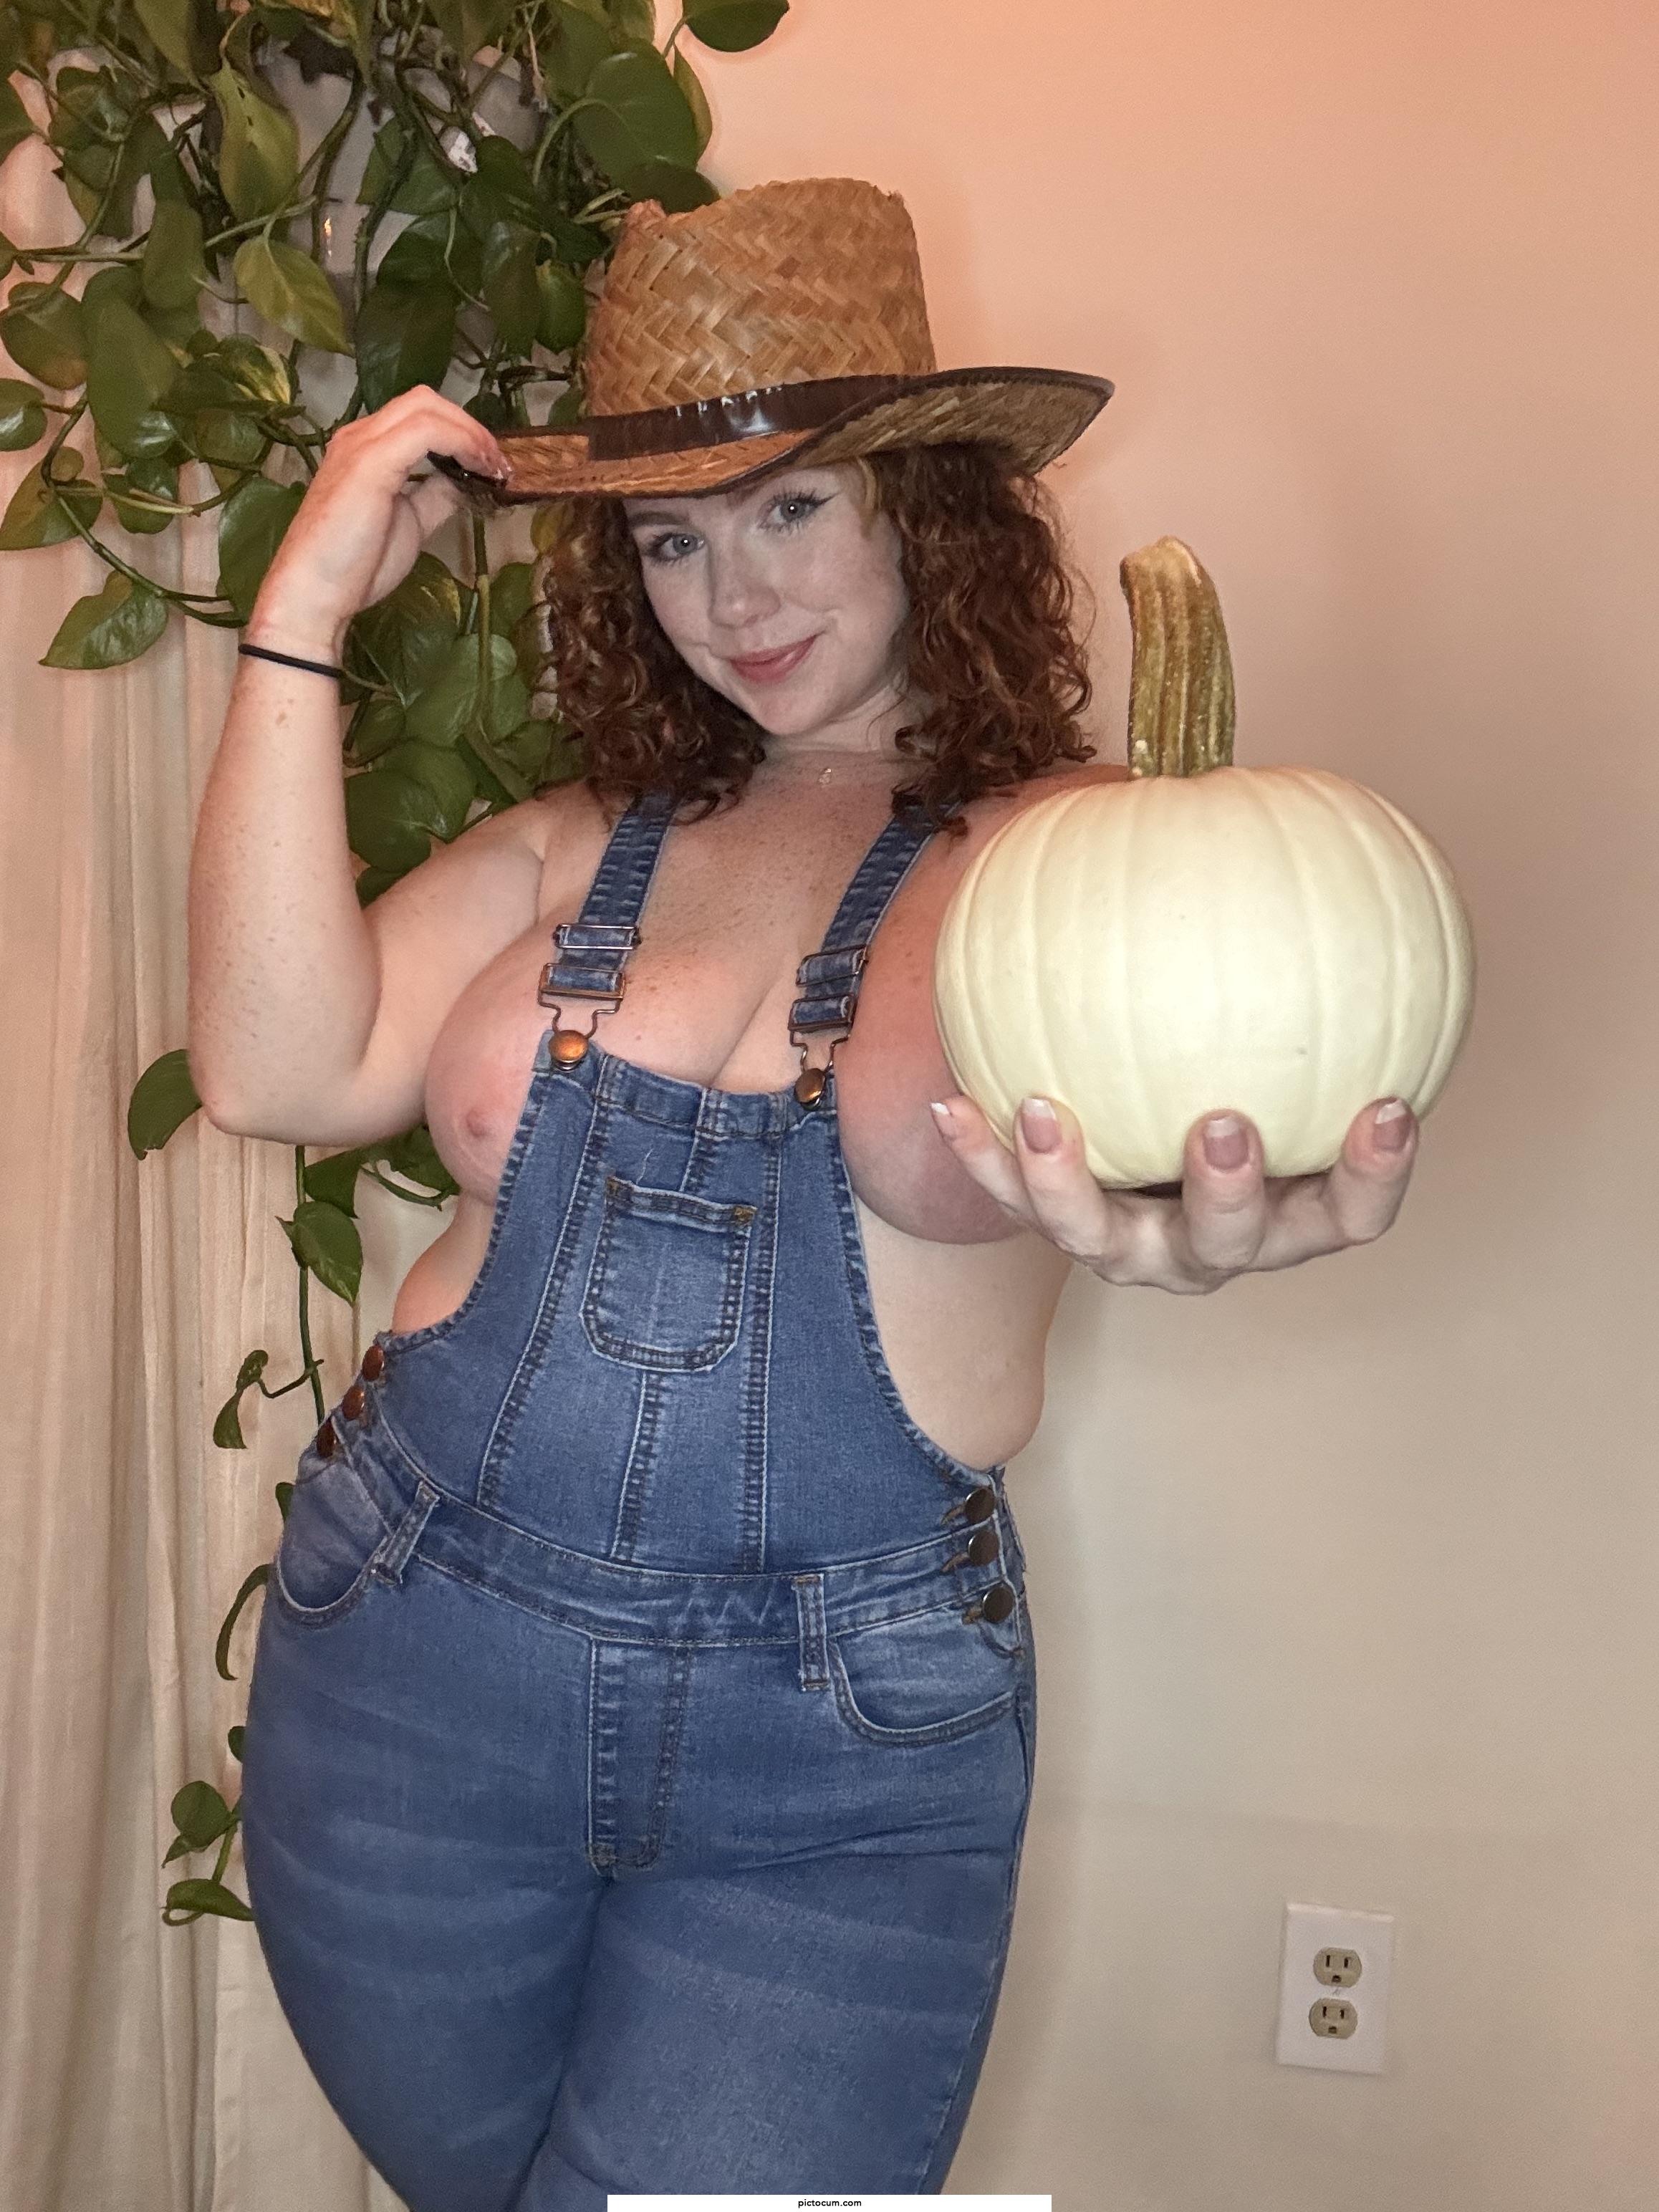 Cute curvy cowgirl